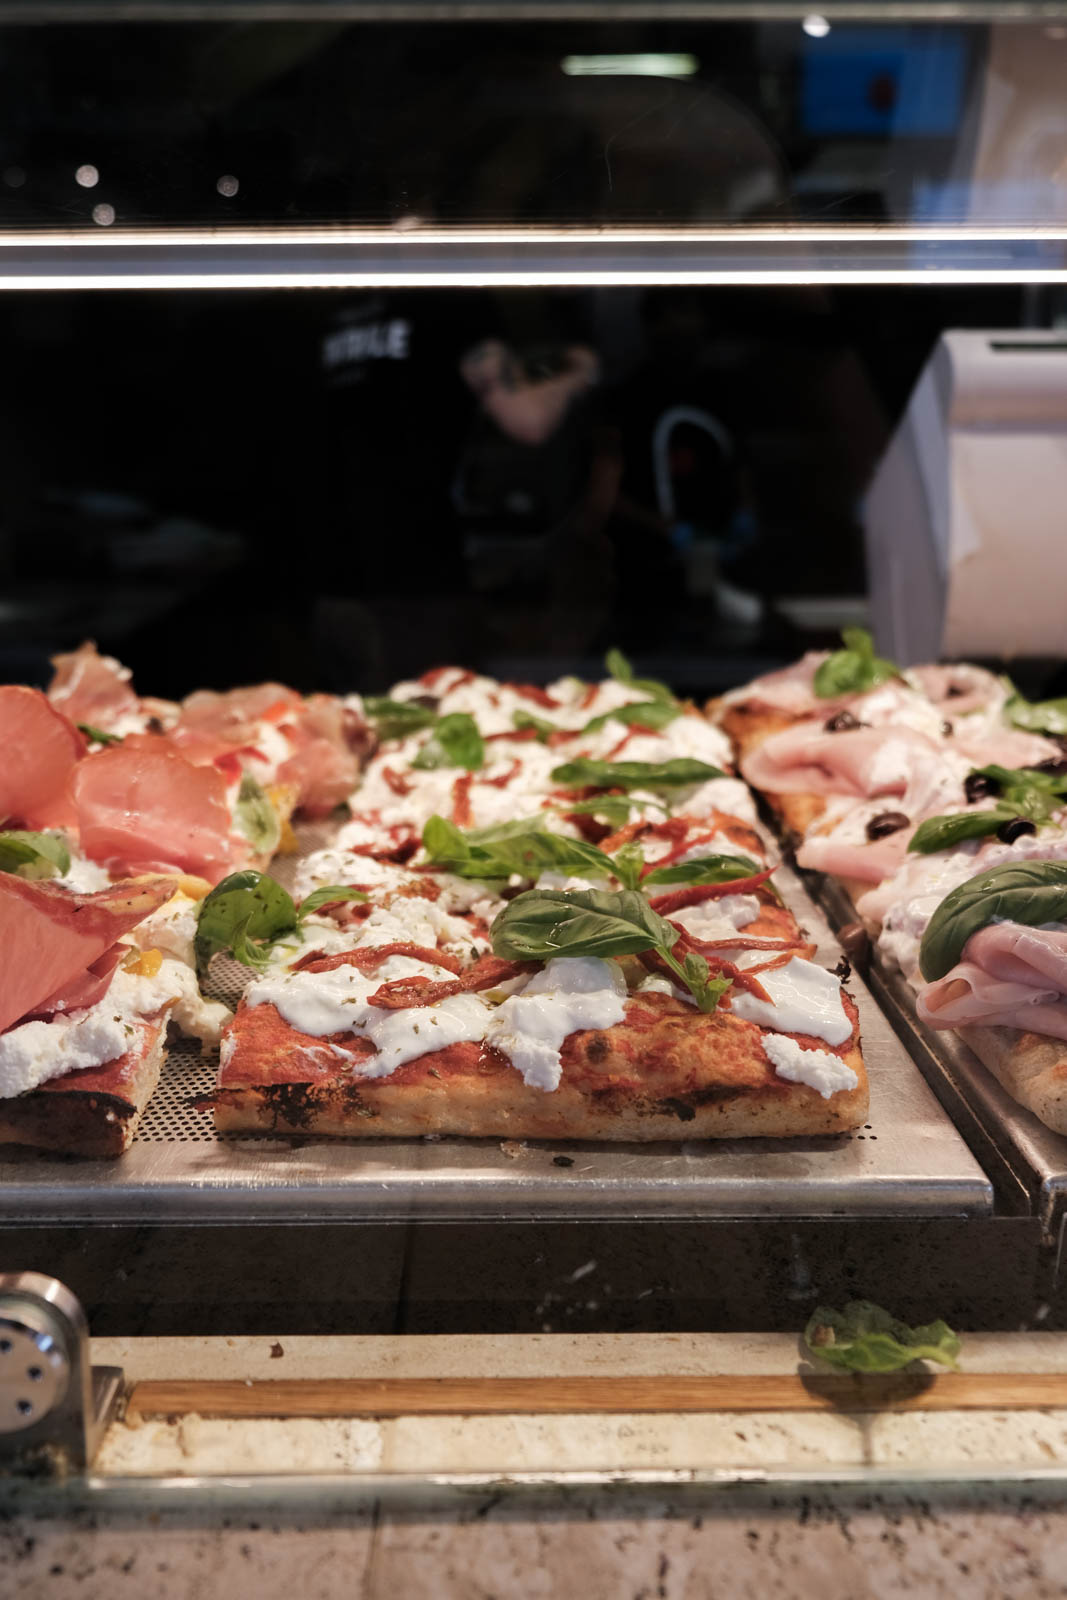 La Pizza in Teglia at Mercato Centrale di Firenze in Florence, Italy